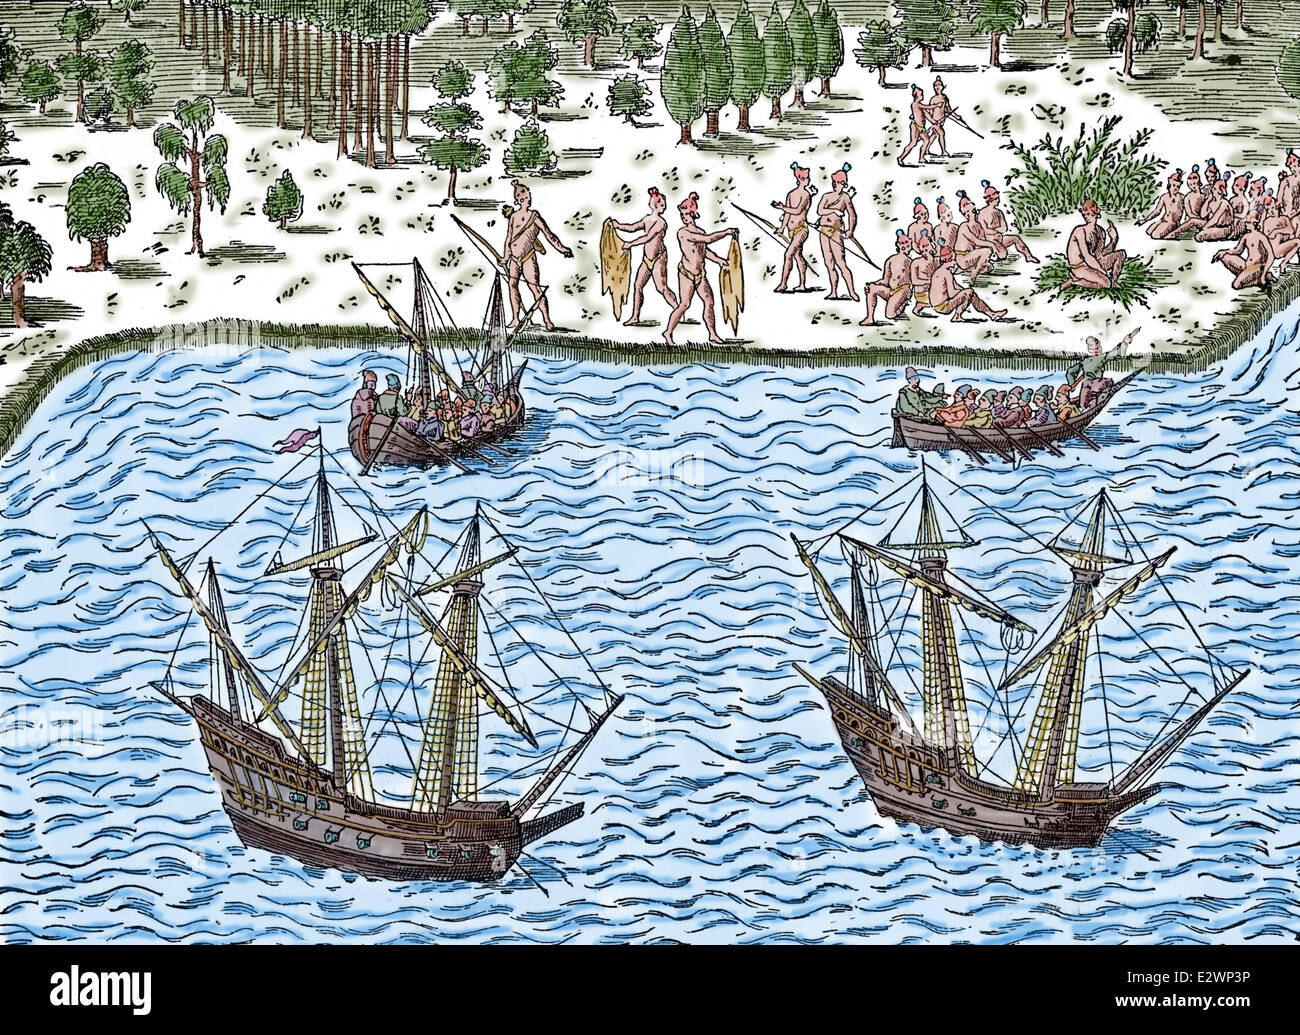 Französischen colonizer.1562 Jean Ribault (1520-1565) führen eine Expedition in die neue Welt. Zweite Vogage. Fort Caroline. Gravur. Stockfoto